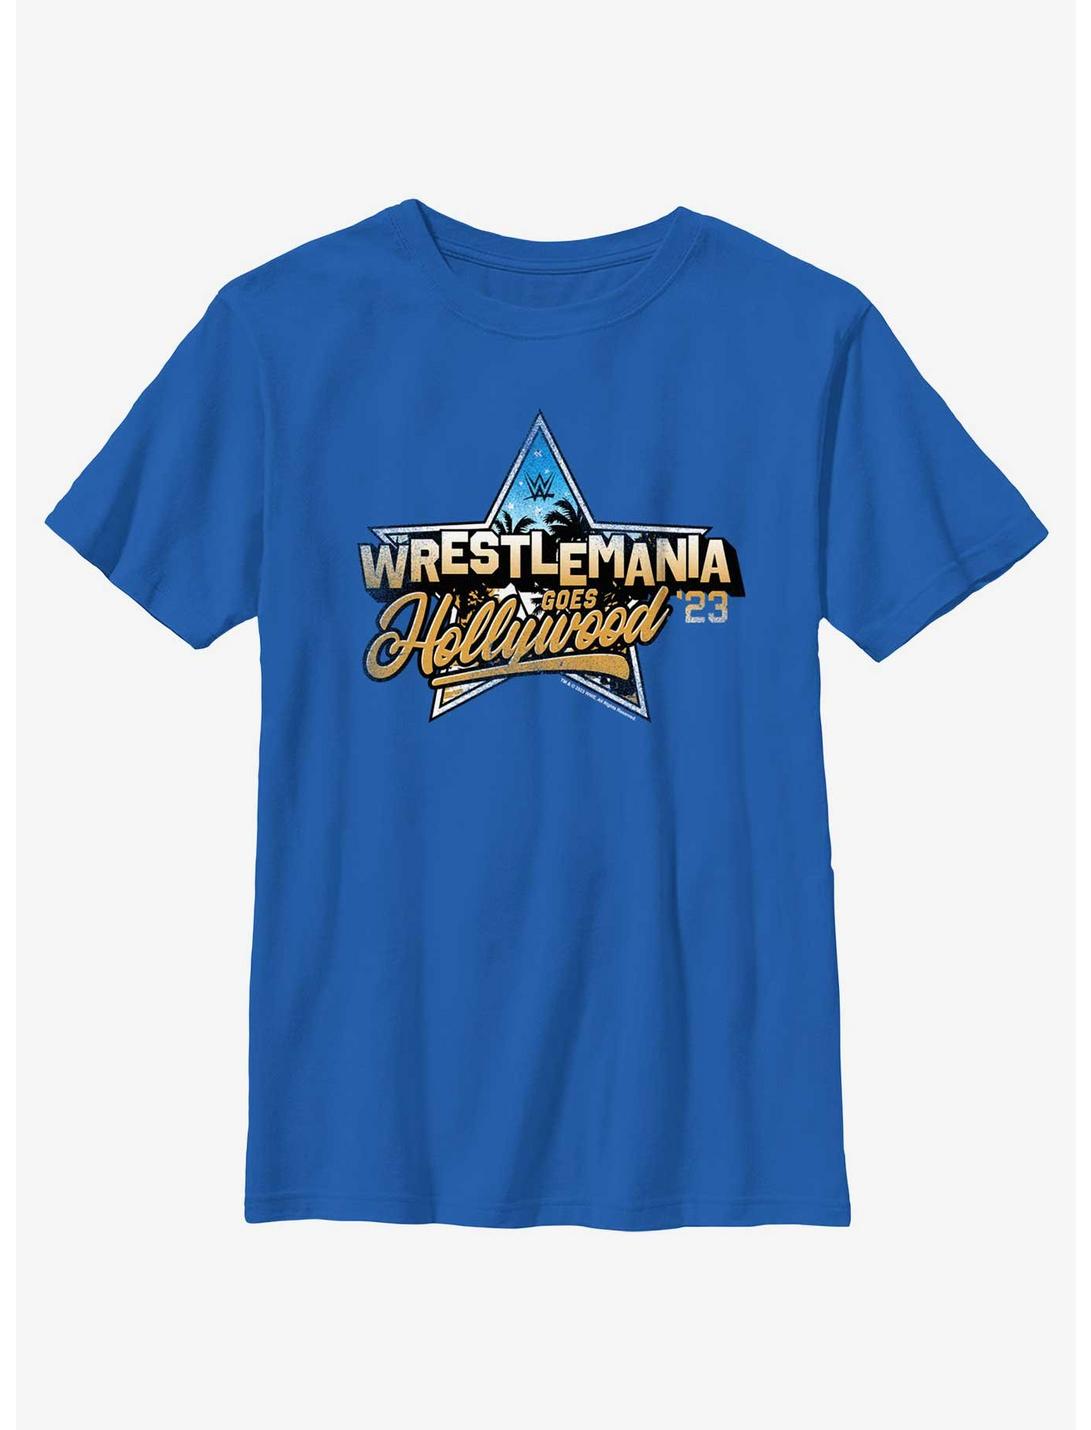 WWE WrestleMania Goes Hollywood 23 Youth T-Shirt, ROYAL, hi-res